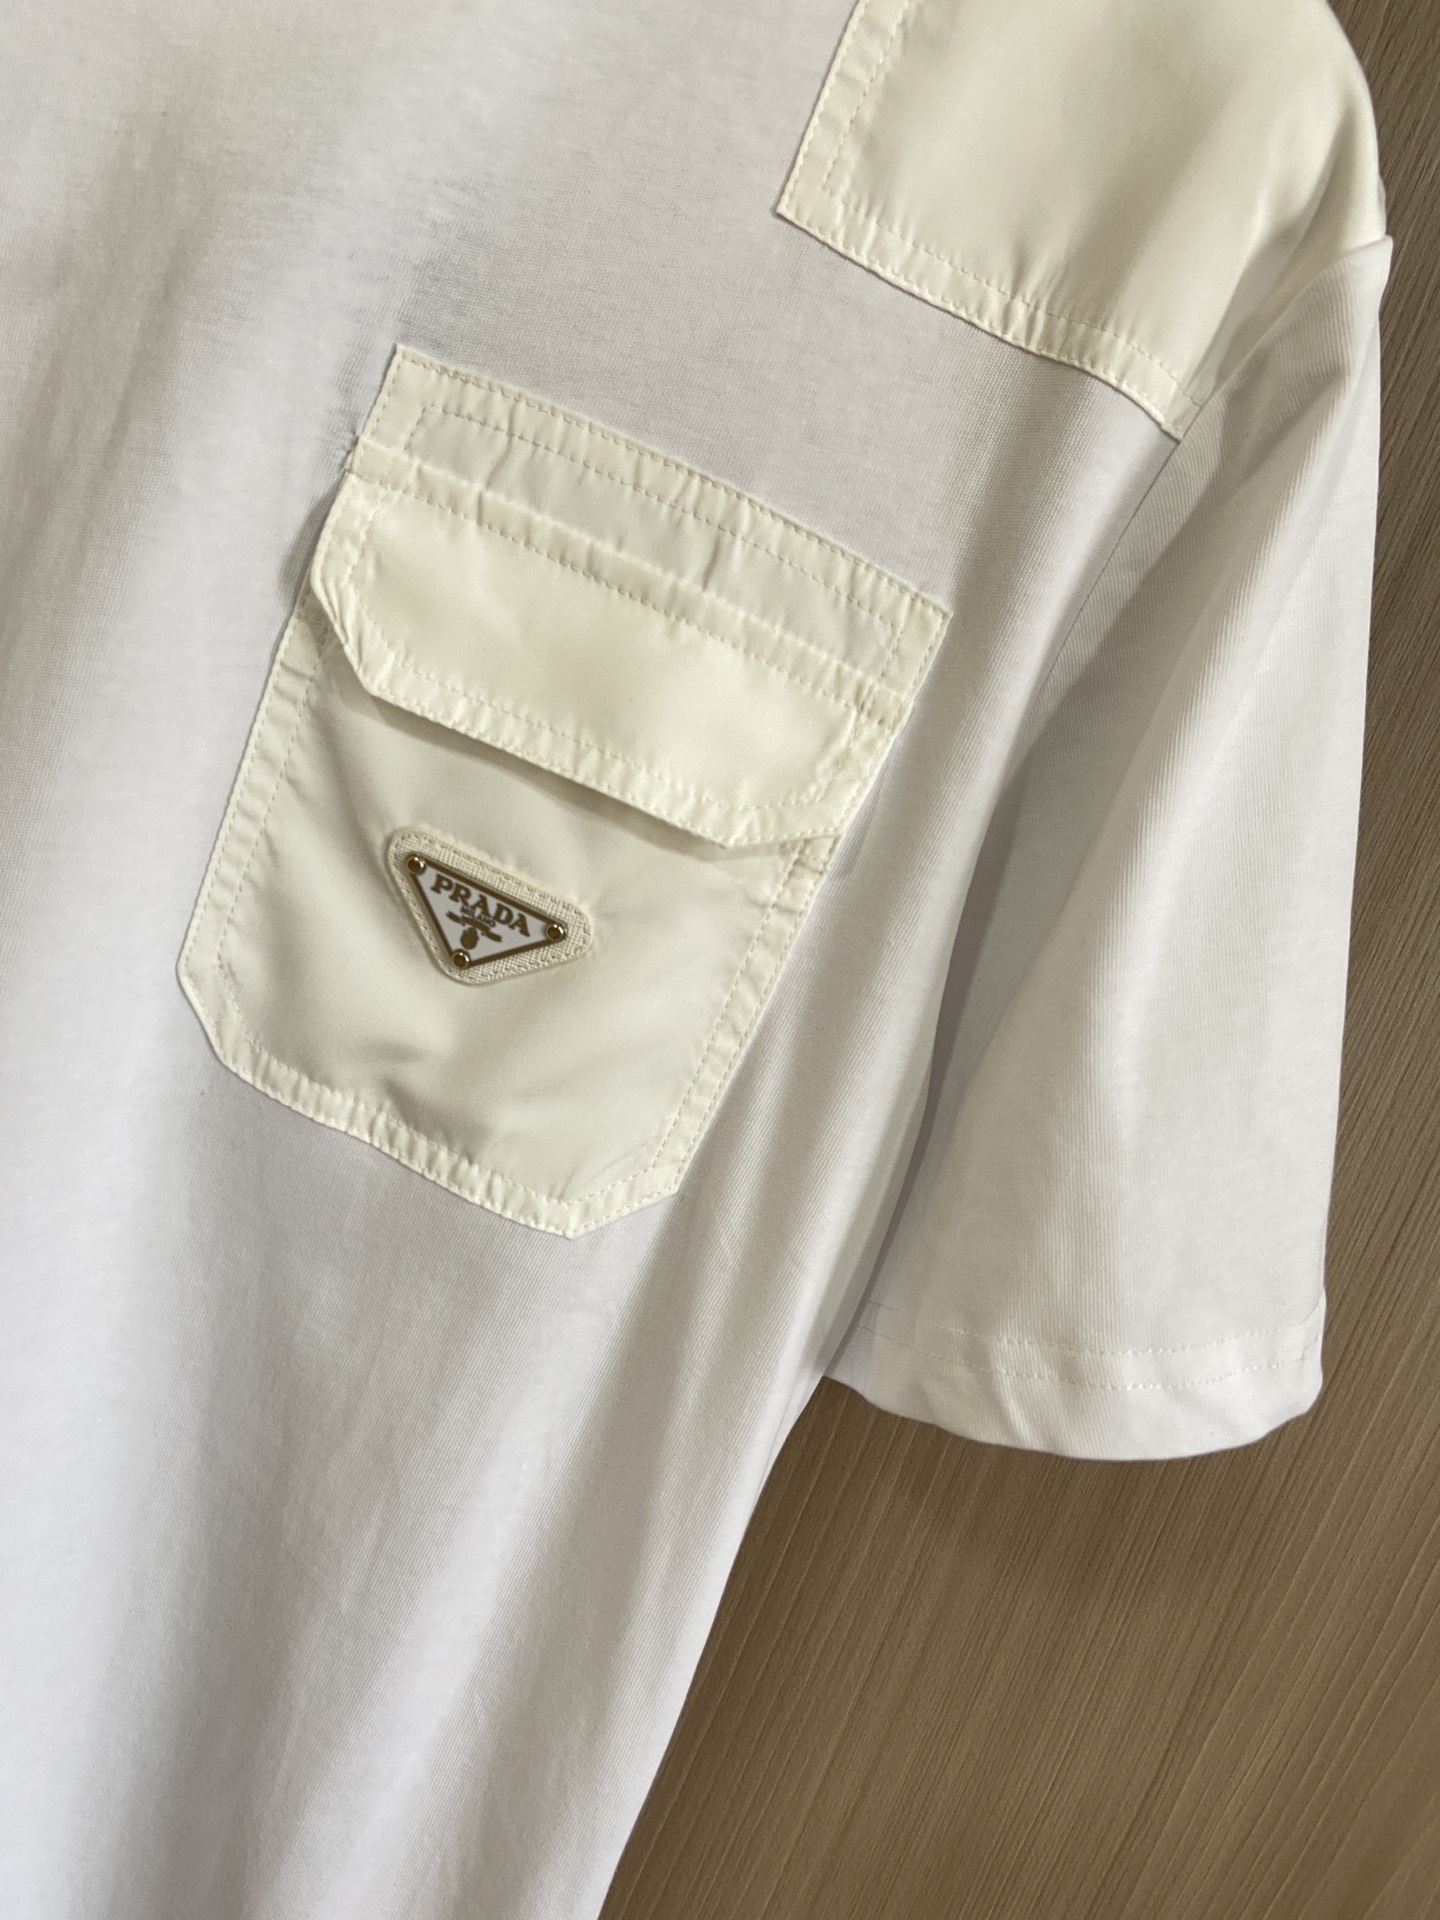 P家口袋三角牌短袖融运动风极简主义设计和精美细节于一身搭配PRADA的经典尼龙配色三角金属琅琊章尽显品牌